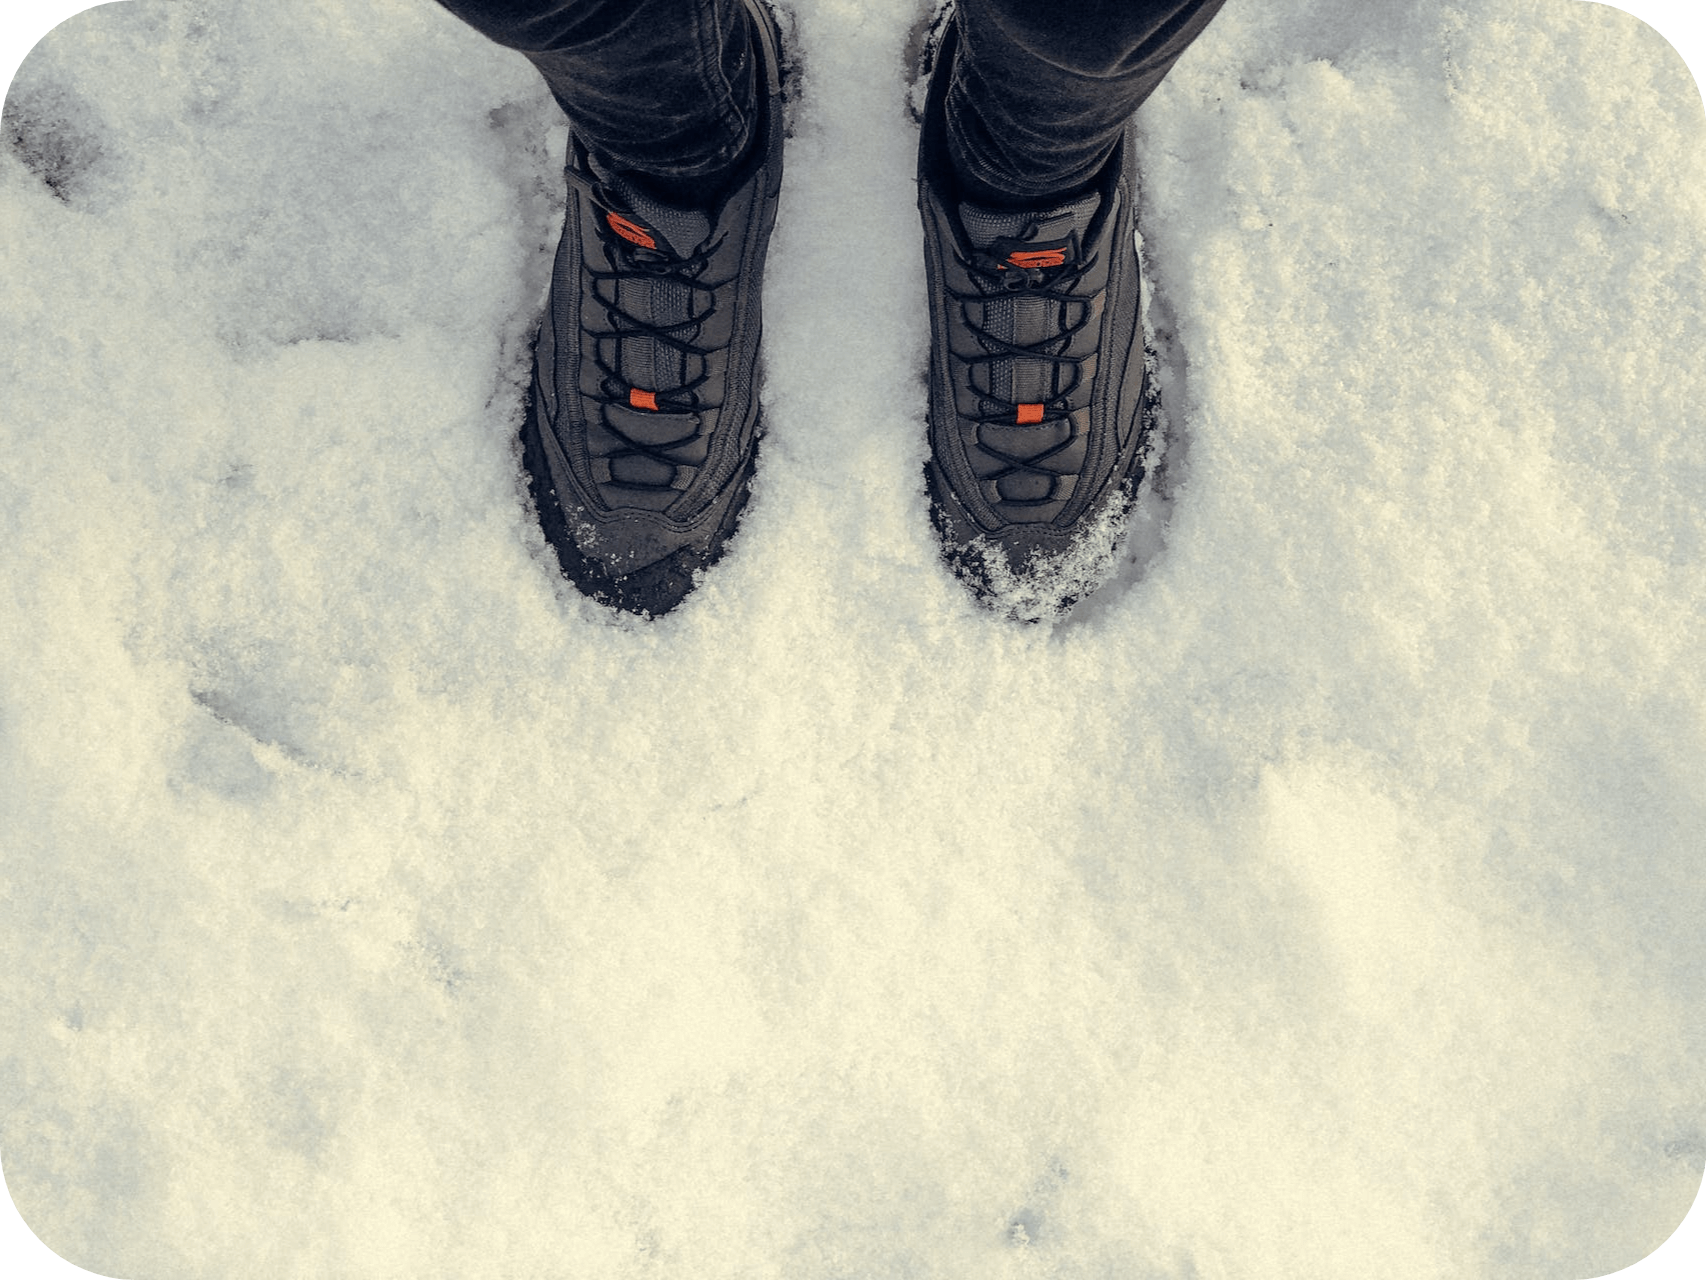 Pracovné úrazy. Zimná pracovná obuv zhora: Nohy v tepelne izolovanej a protišmykovej obuvi stojace na snehovej pokrývke. Ochrana a bezpečnosť v každom kroku počas zimného obdobia."